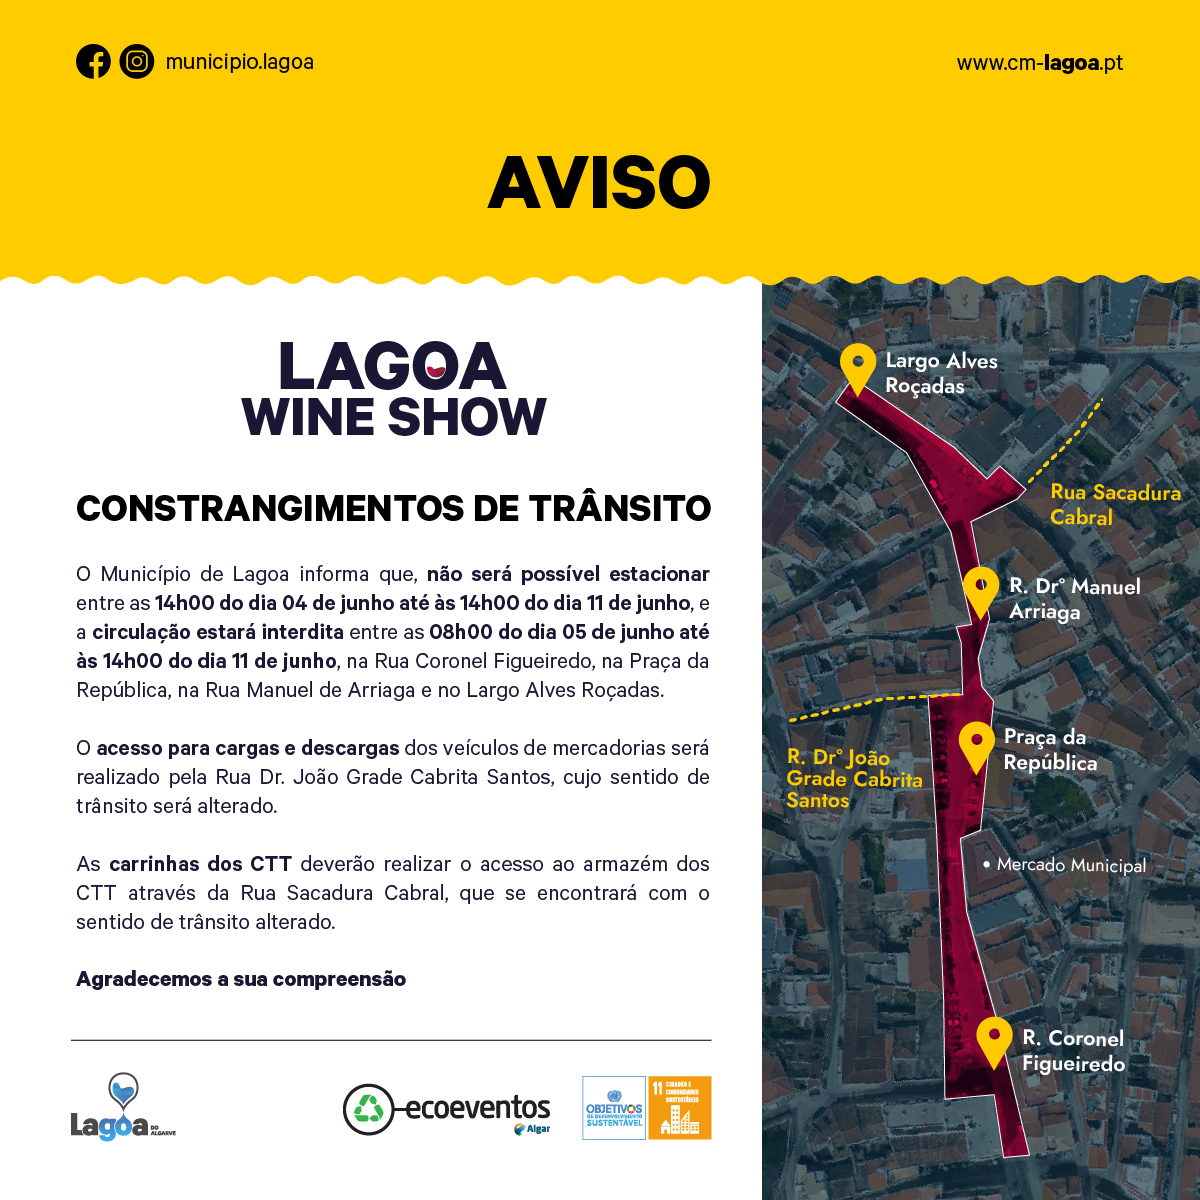 Lagoa Wine Show - Constrangimentos de Trânsito